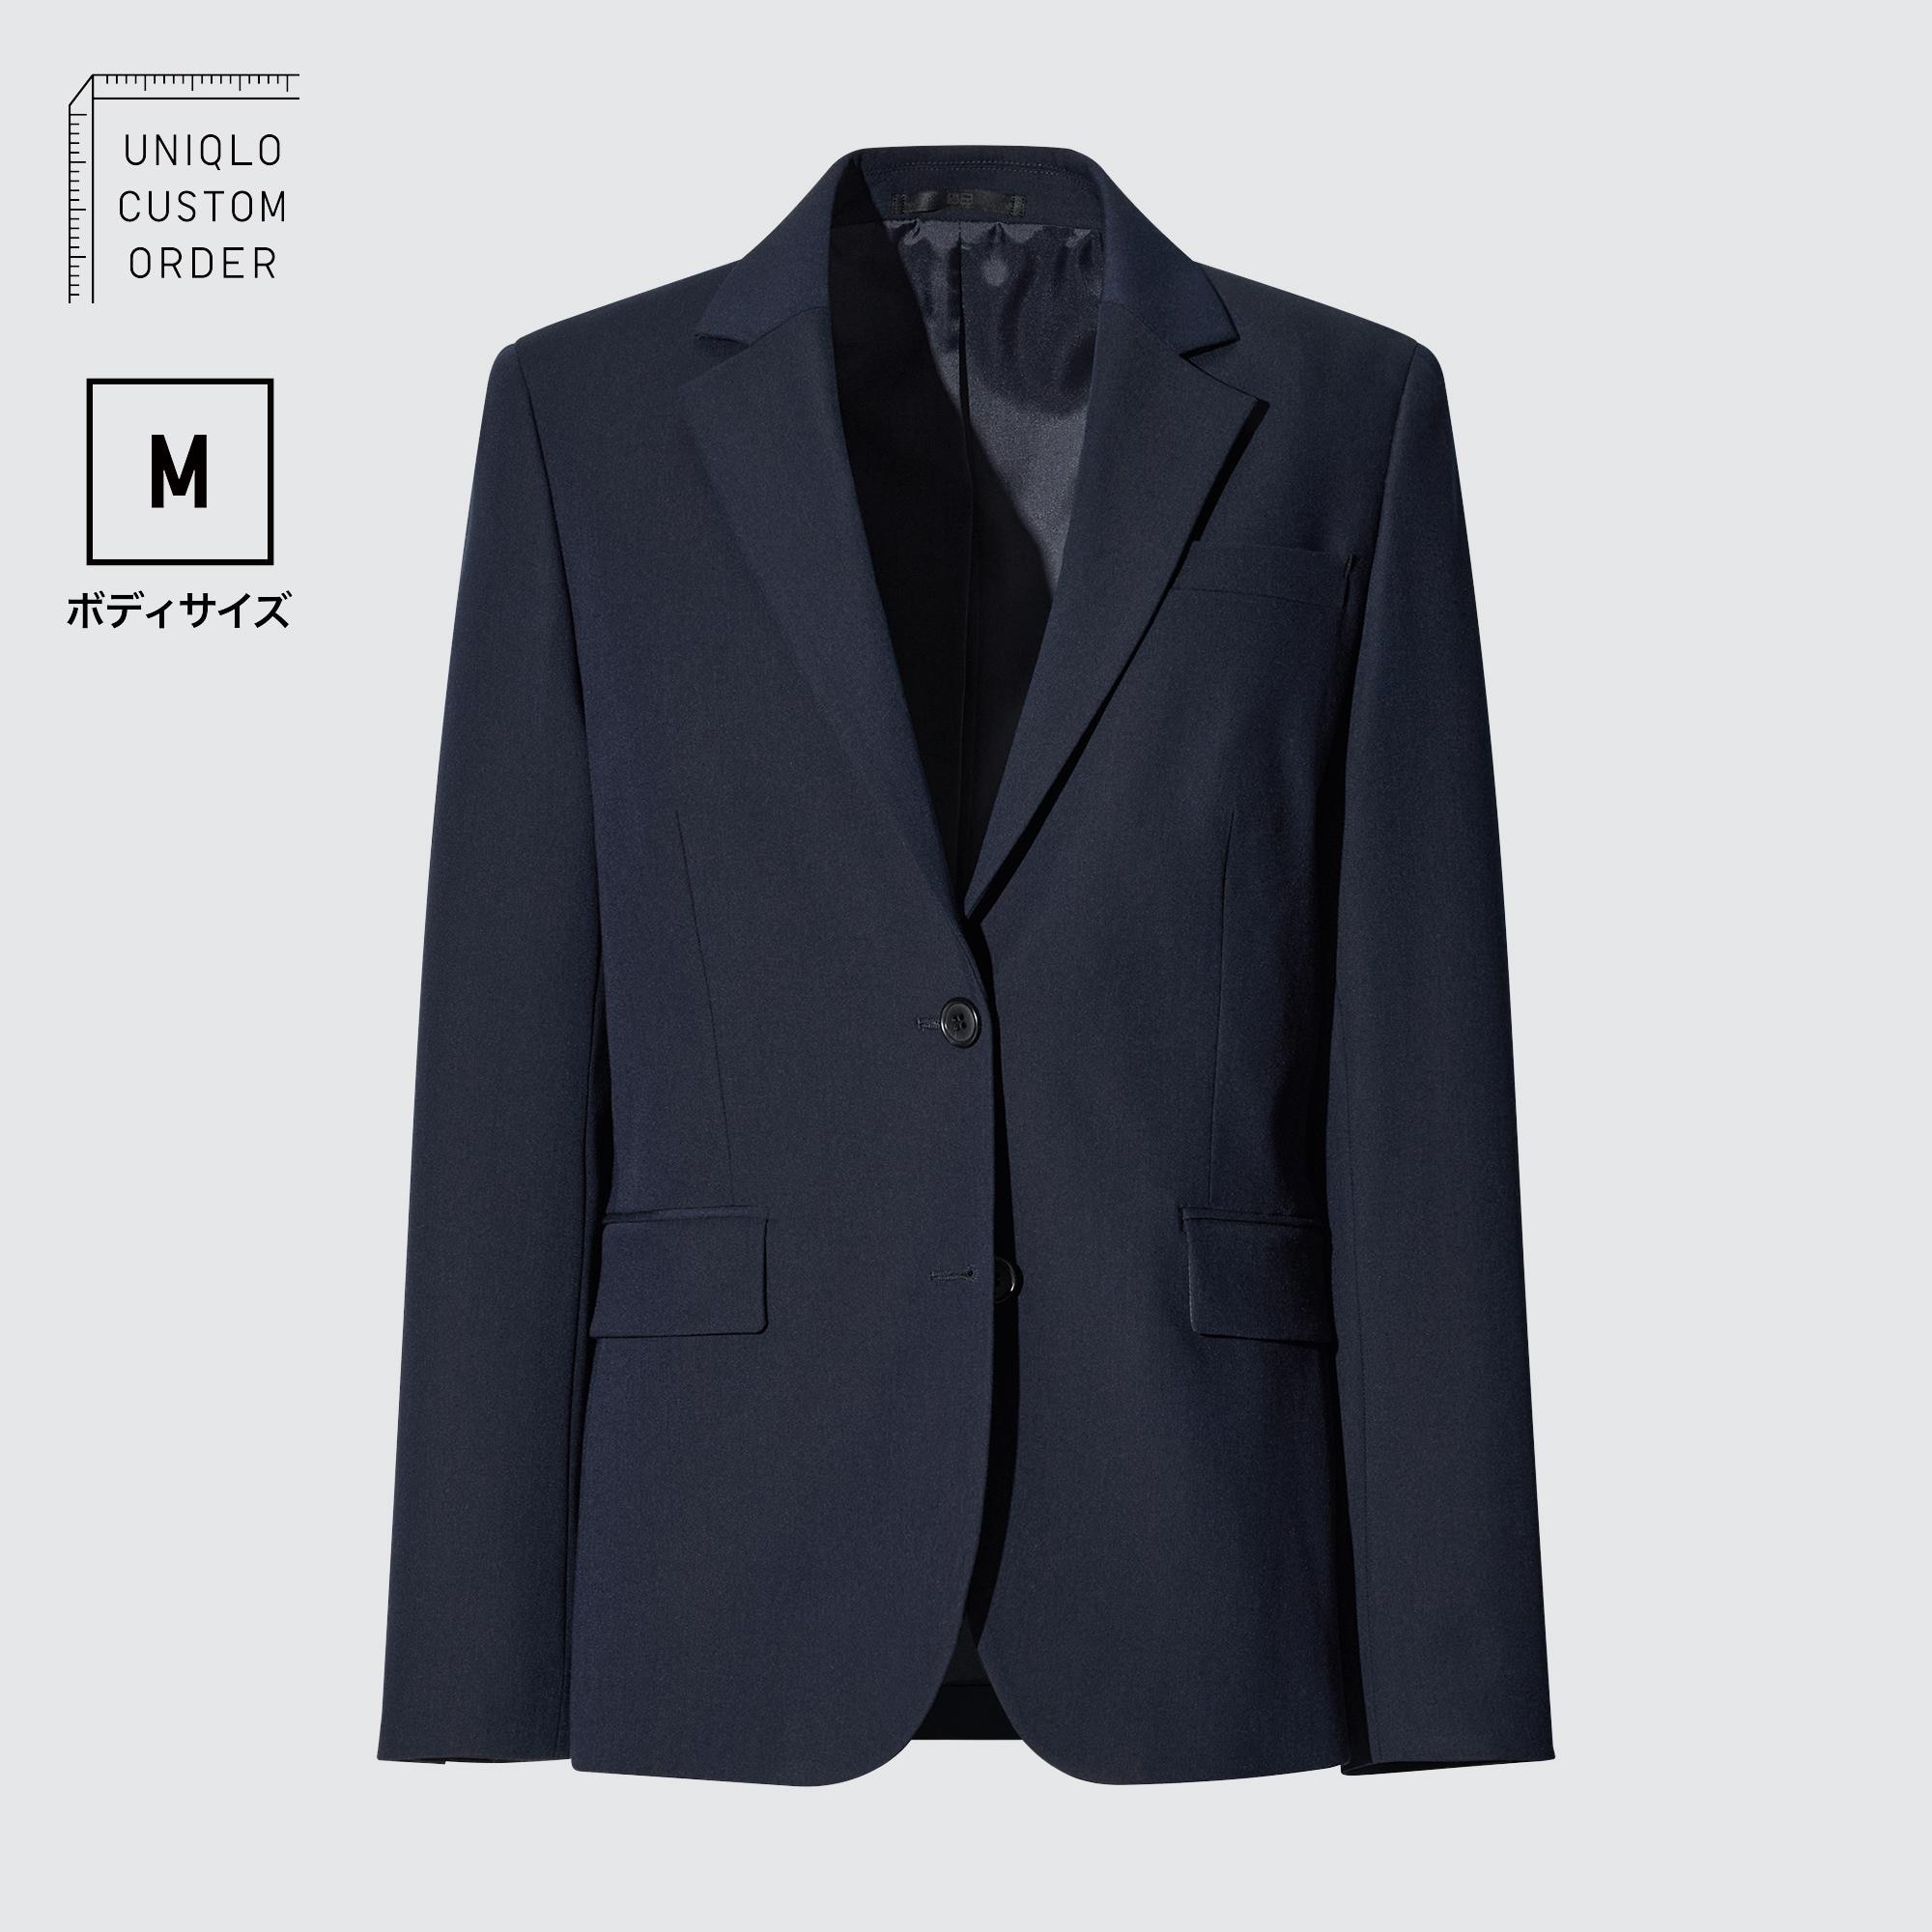 グレーコート スーツの関連商品 | ユニクロ